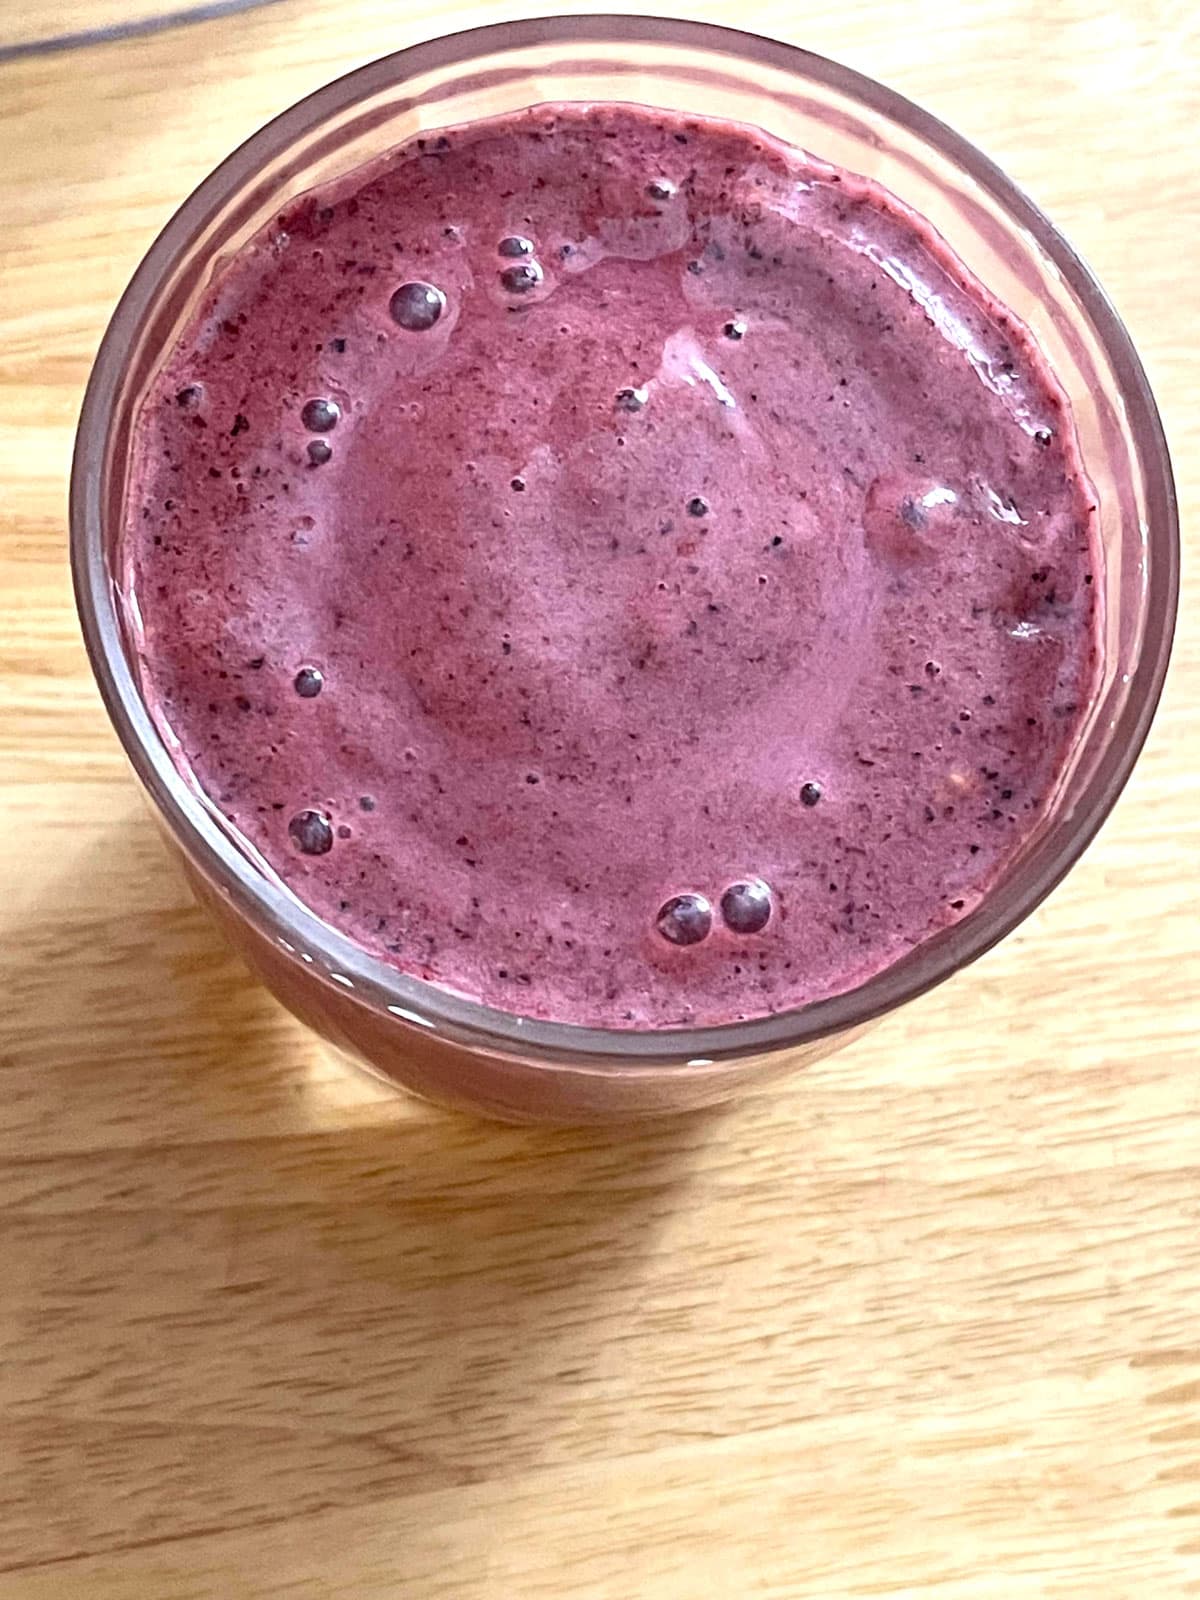 raspberry blueberry smoothie